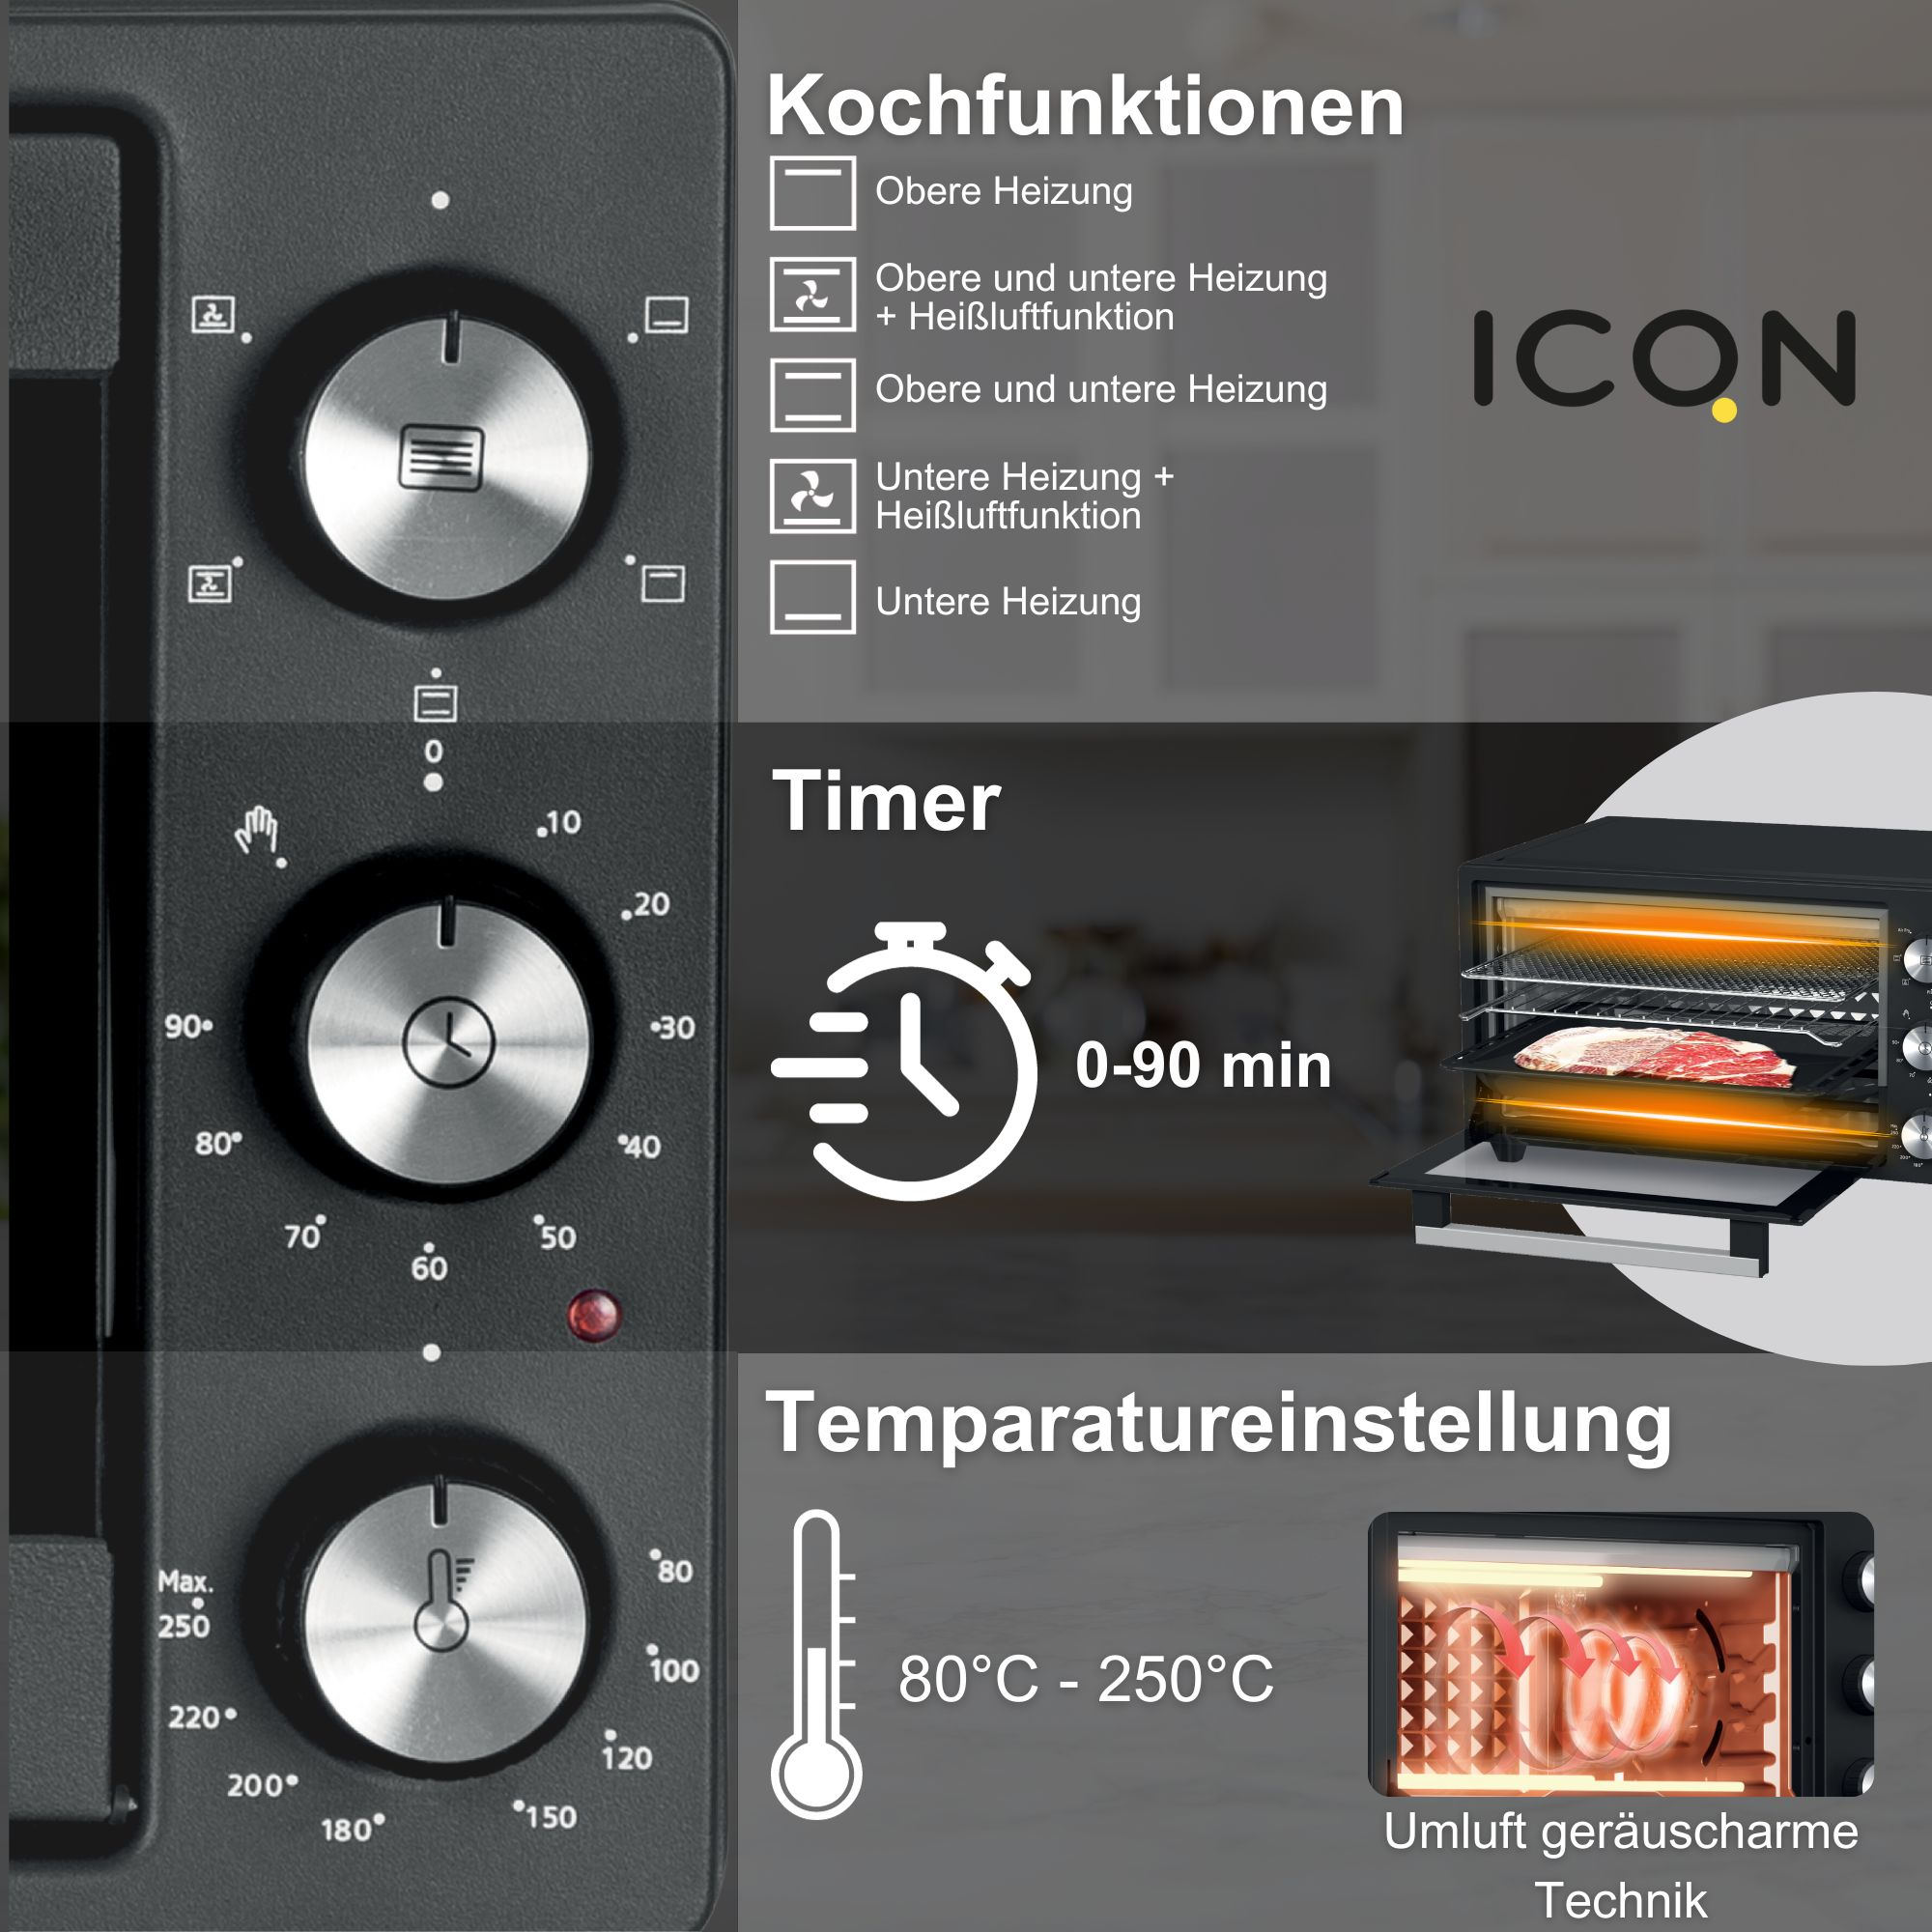 ICQN 20 L, 1500 80°-250°C, Grill-Funktion, Minibackofen Timer 5 90 W, Min